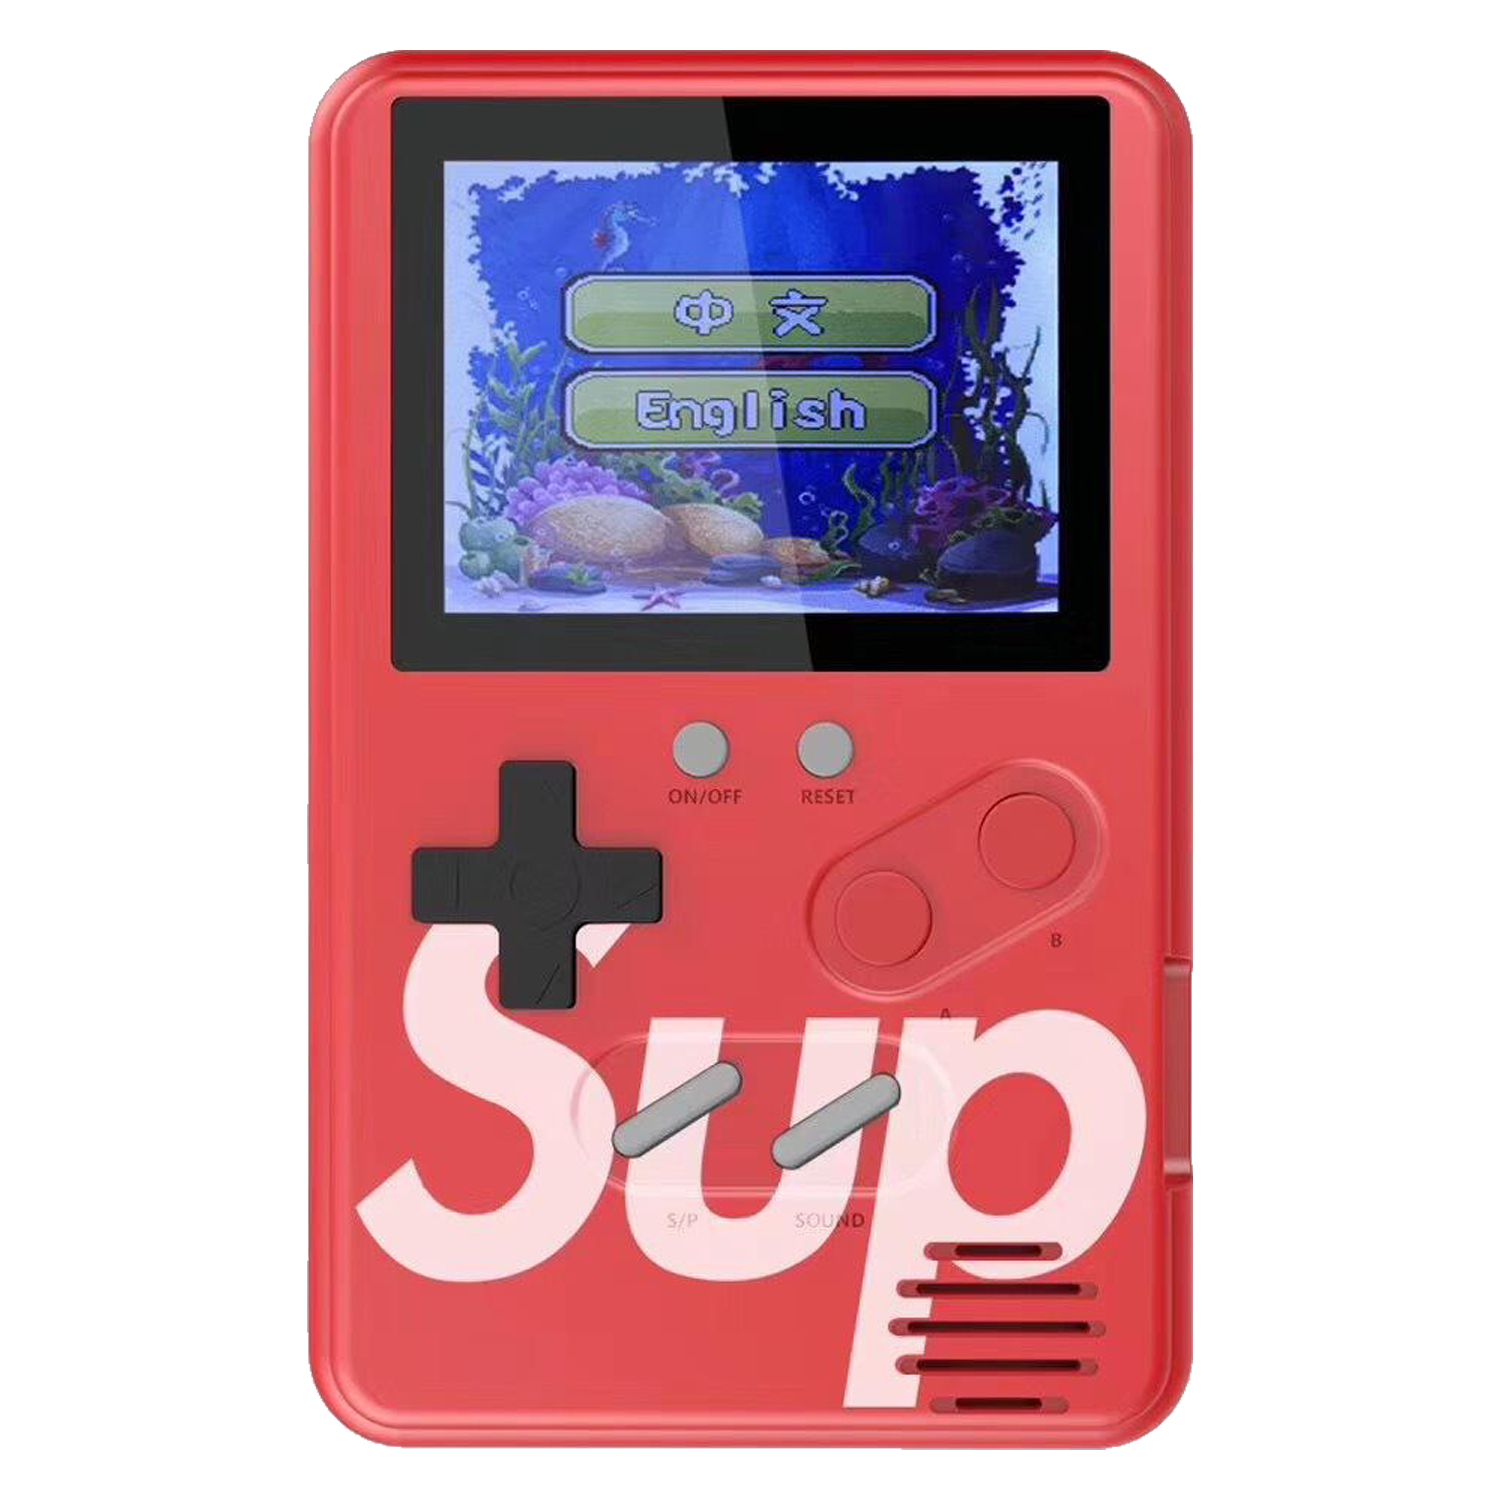 Console Game Boy Wanle Sup Slim 500 Jogos em 1 - Vermelho